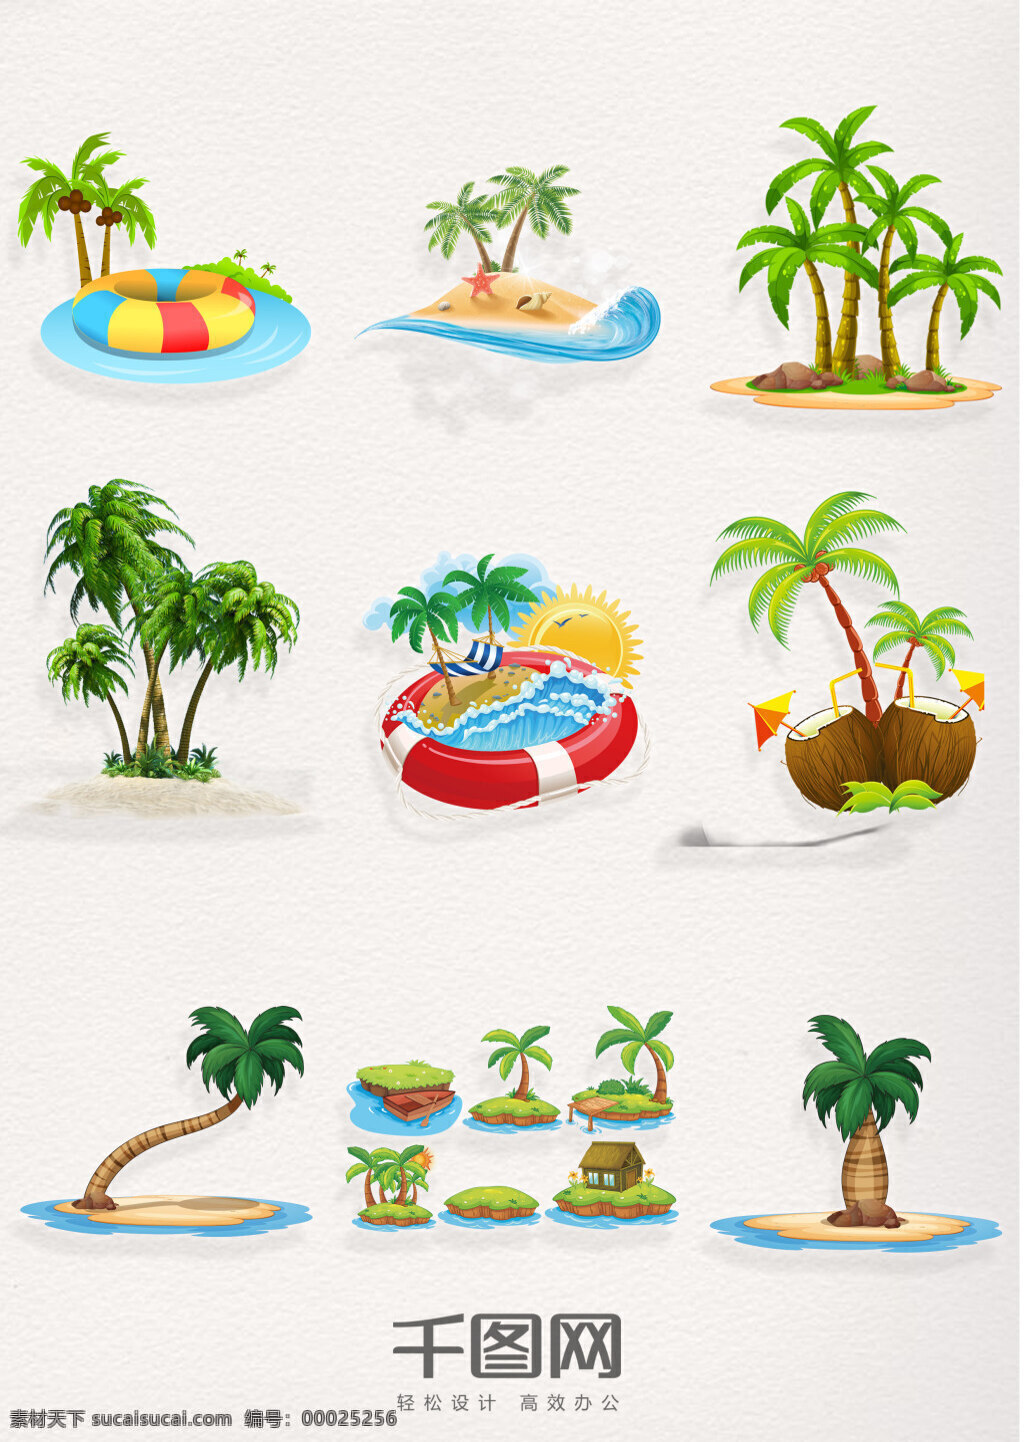 组 海岛 椰子树 风景 图 夏季椰子树 沙滩 卡通椰子树 ps 游泳圈 椰子 椰子树图案 小岛椰子树 椰子树图片